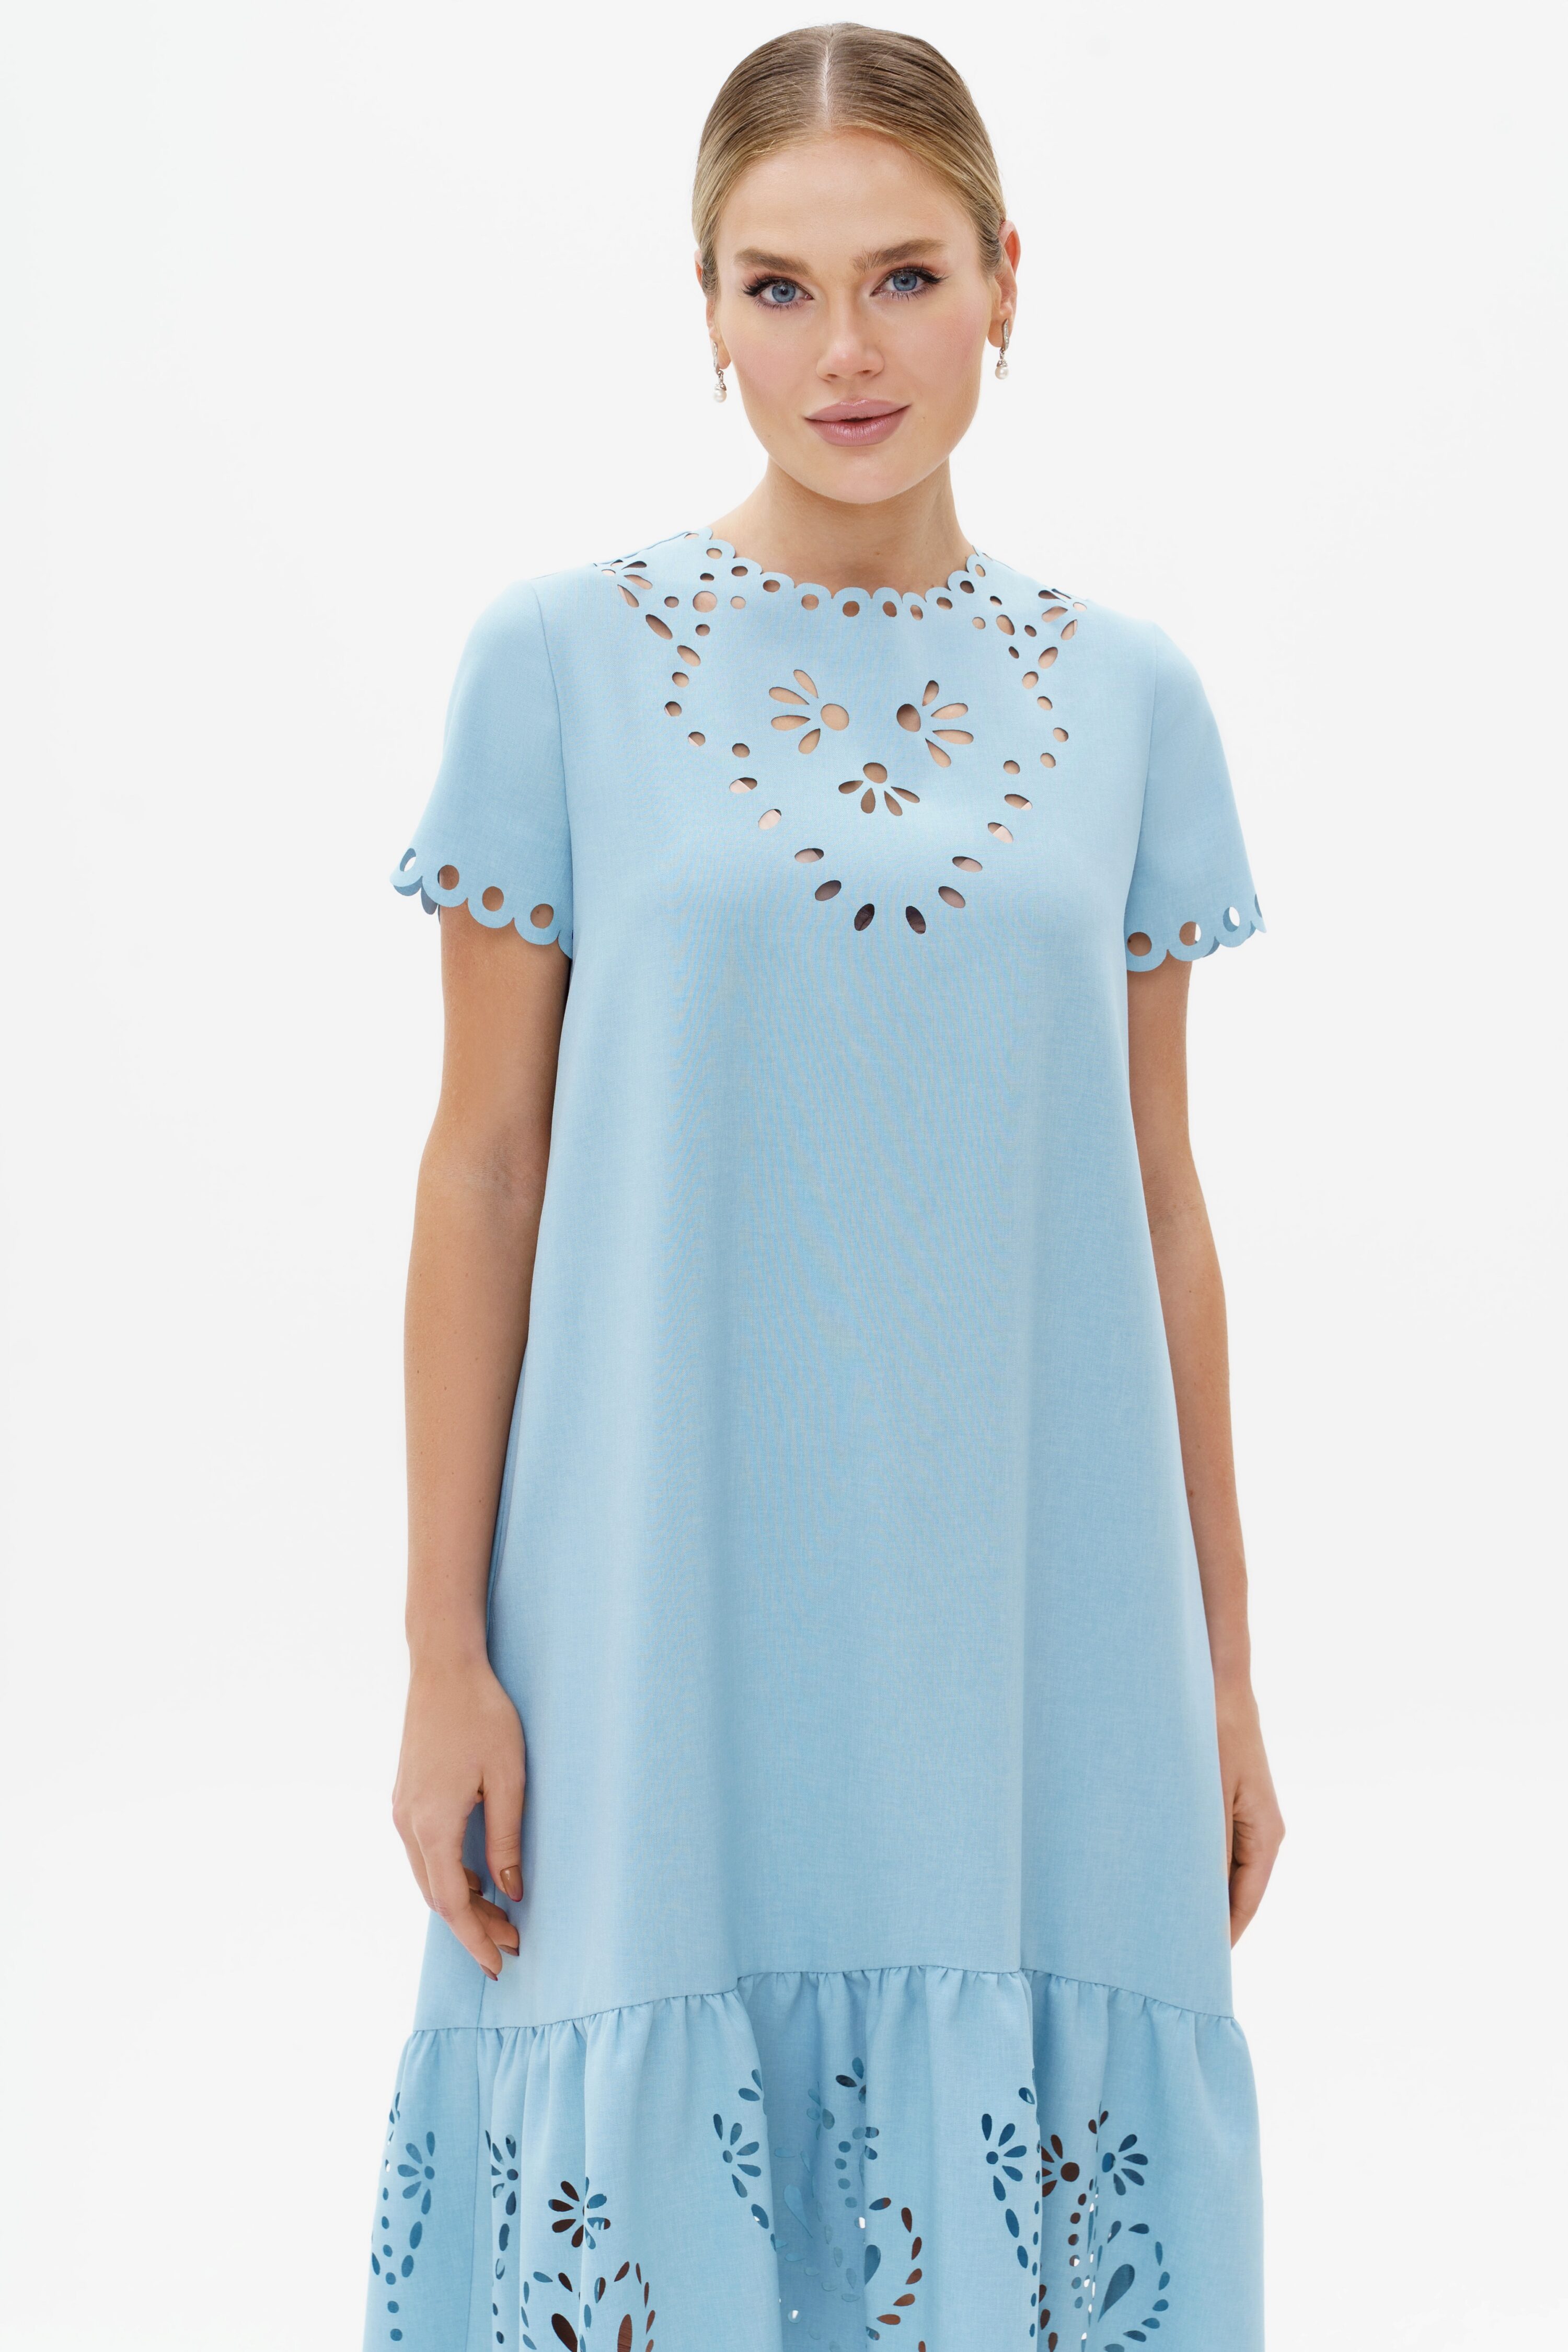 Купить платье URS 23-231-3 женское летнее голубое